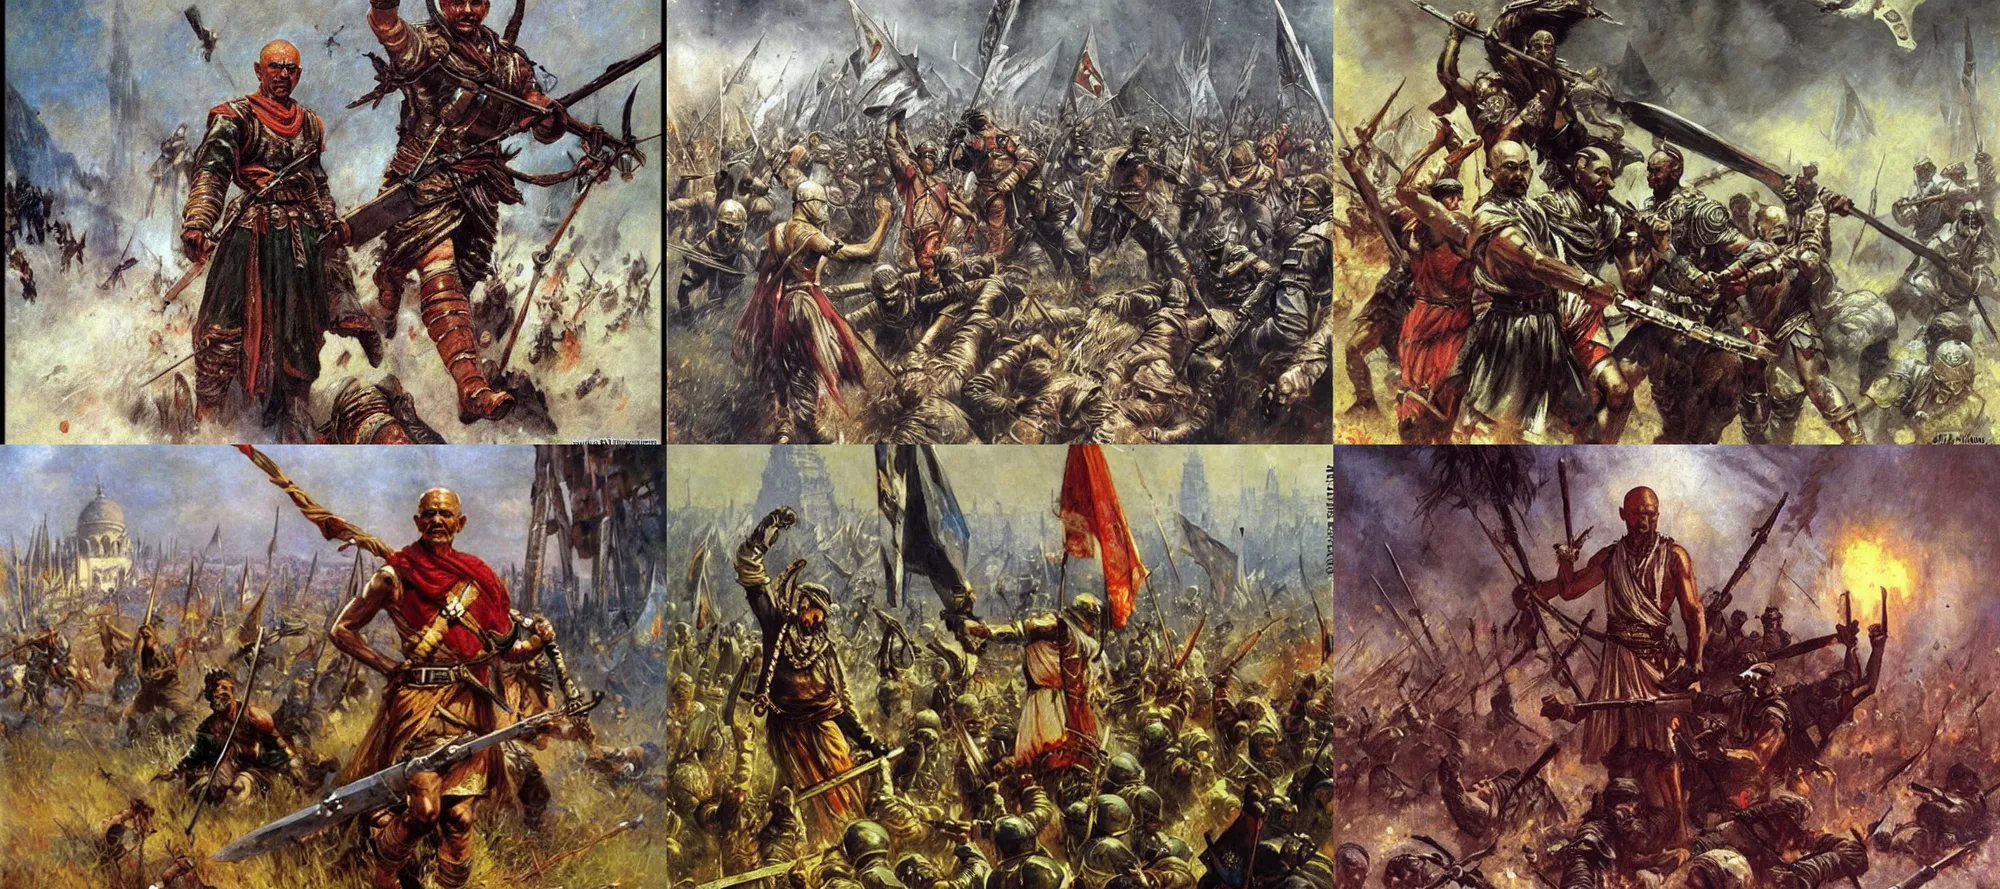 Prompt: Ghandi in War Hammer Epic fantasy art, cinematic asterpiece by vasnetsov and surikov